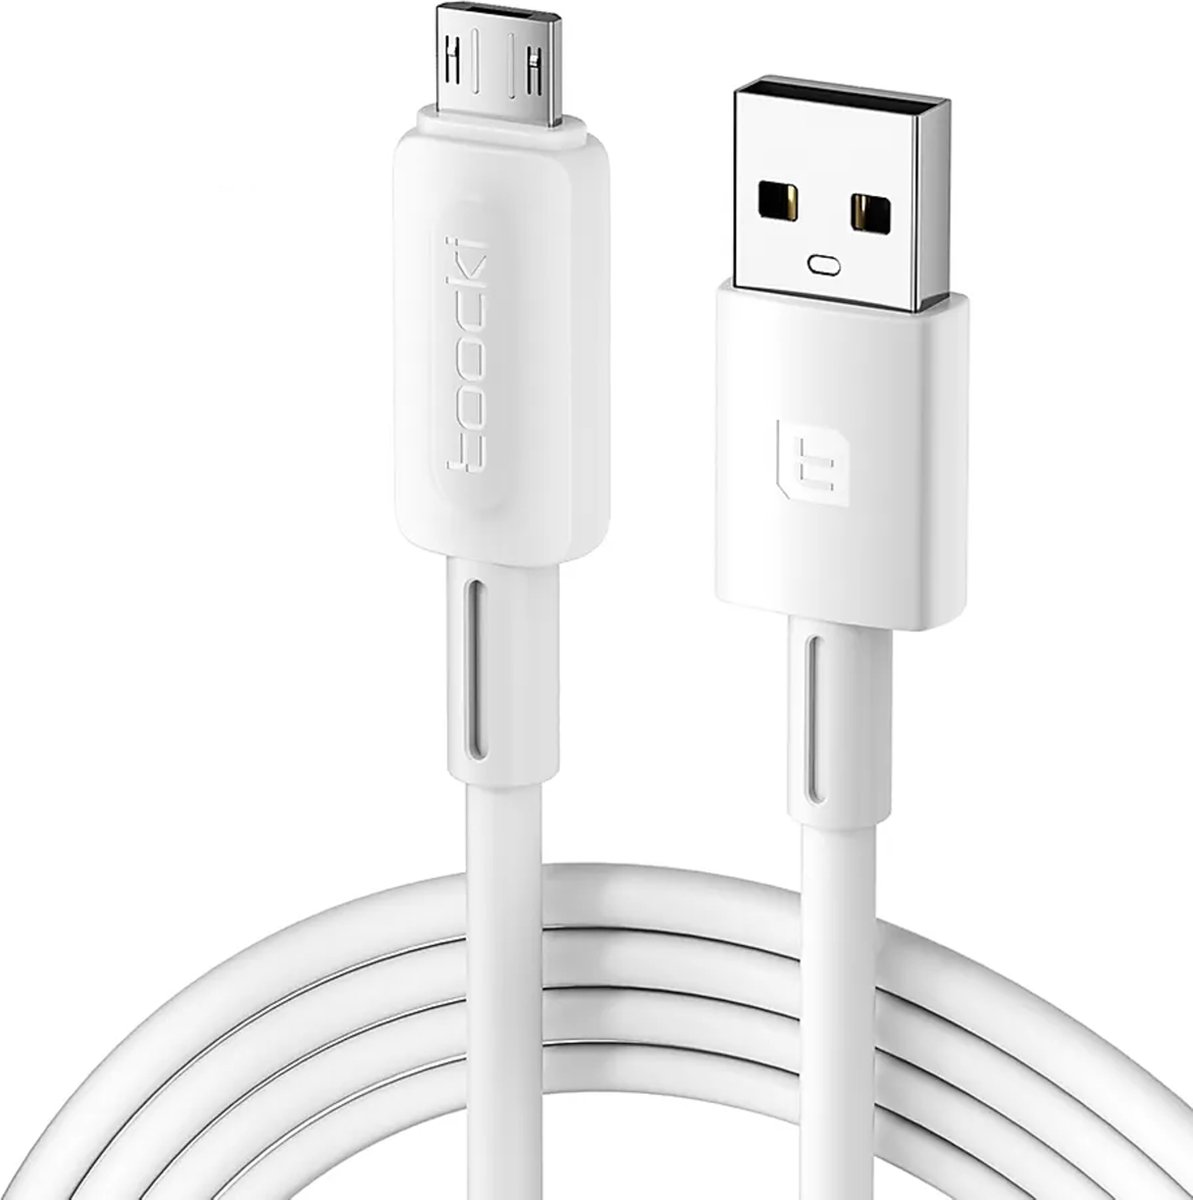 Toocki Oplaadkabel 'Fast Charging' - USB-A naar MICRO USB - 12W 2.4A Snellader - 2 Meter - voor Samsung, OnePlus, LG, Nokia, Huawei, Xiaomi, Sony, PS4, Xbox One, JBL, Motorola, Alcatel - Tot 2 Keer Sneller - 480Gbps - Snoer van TPE-Rubber - WIT